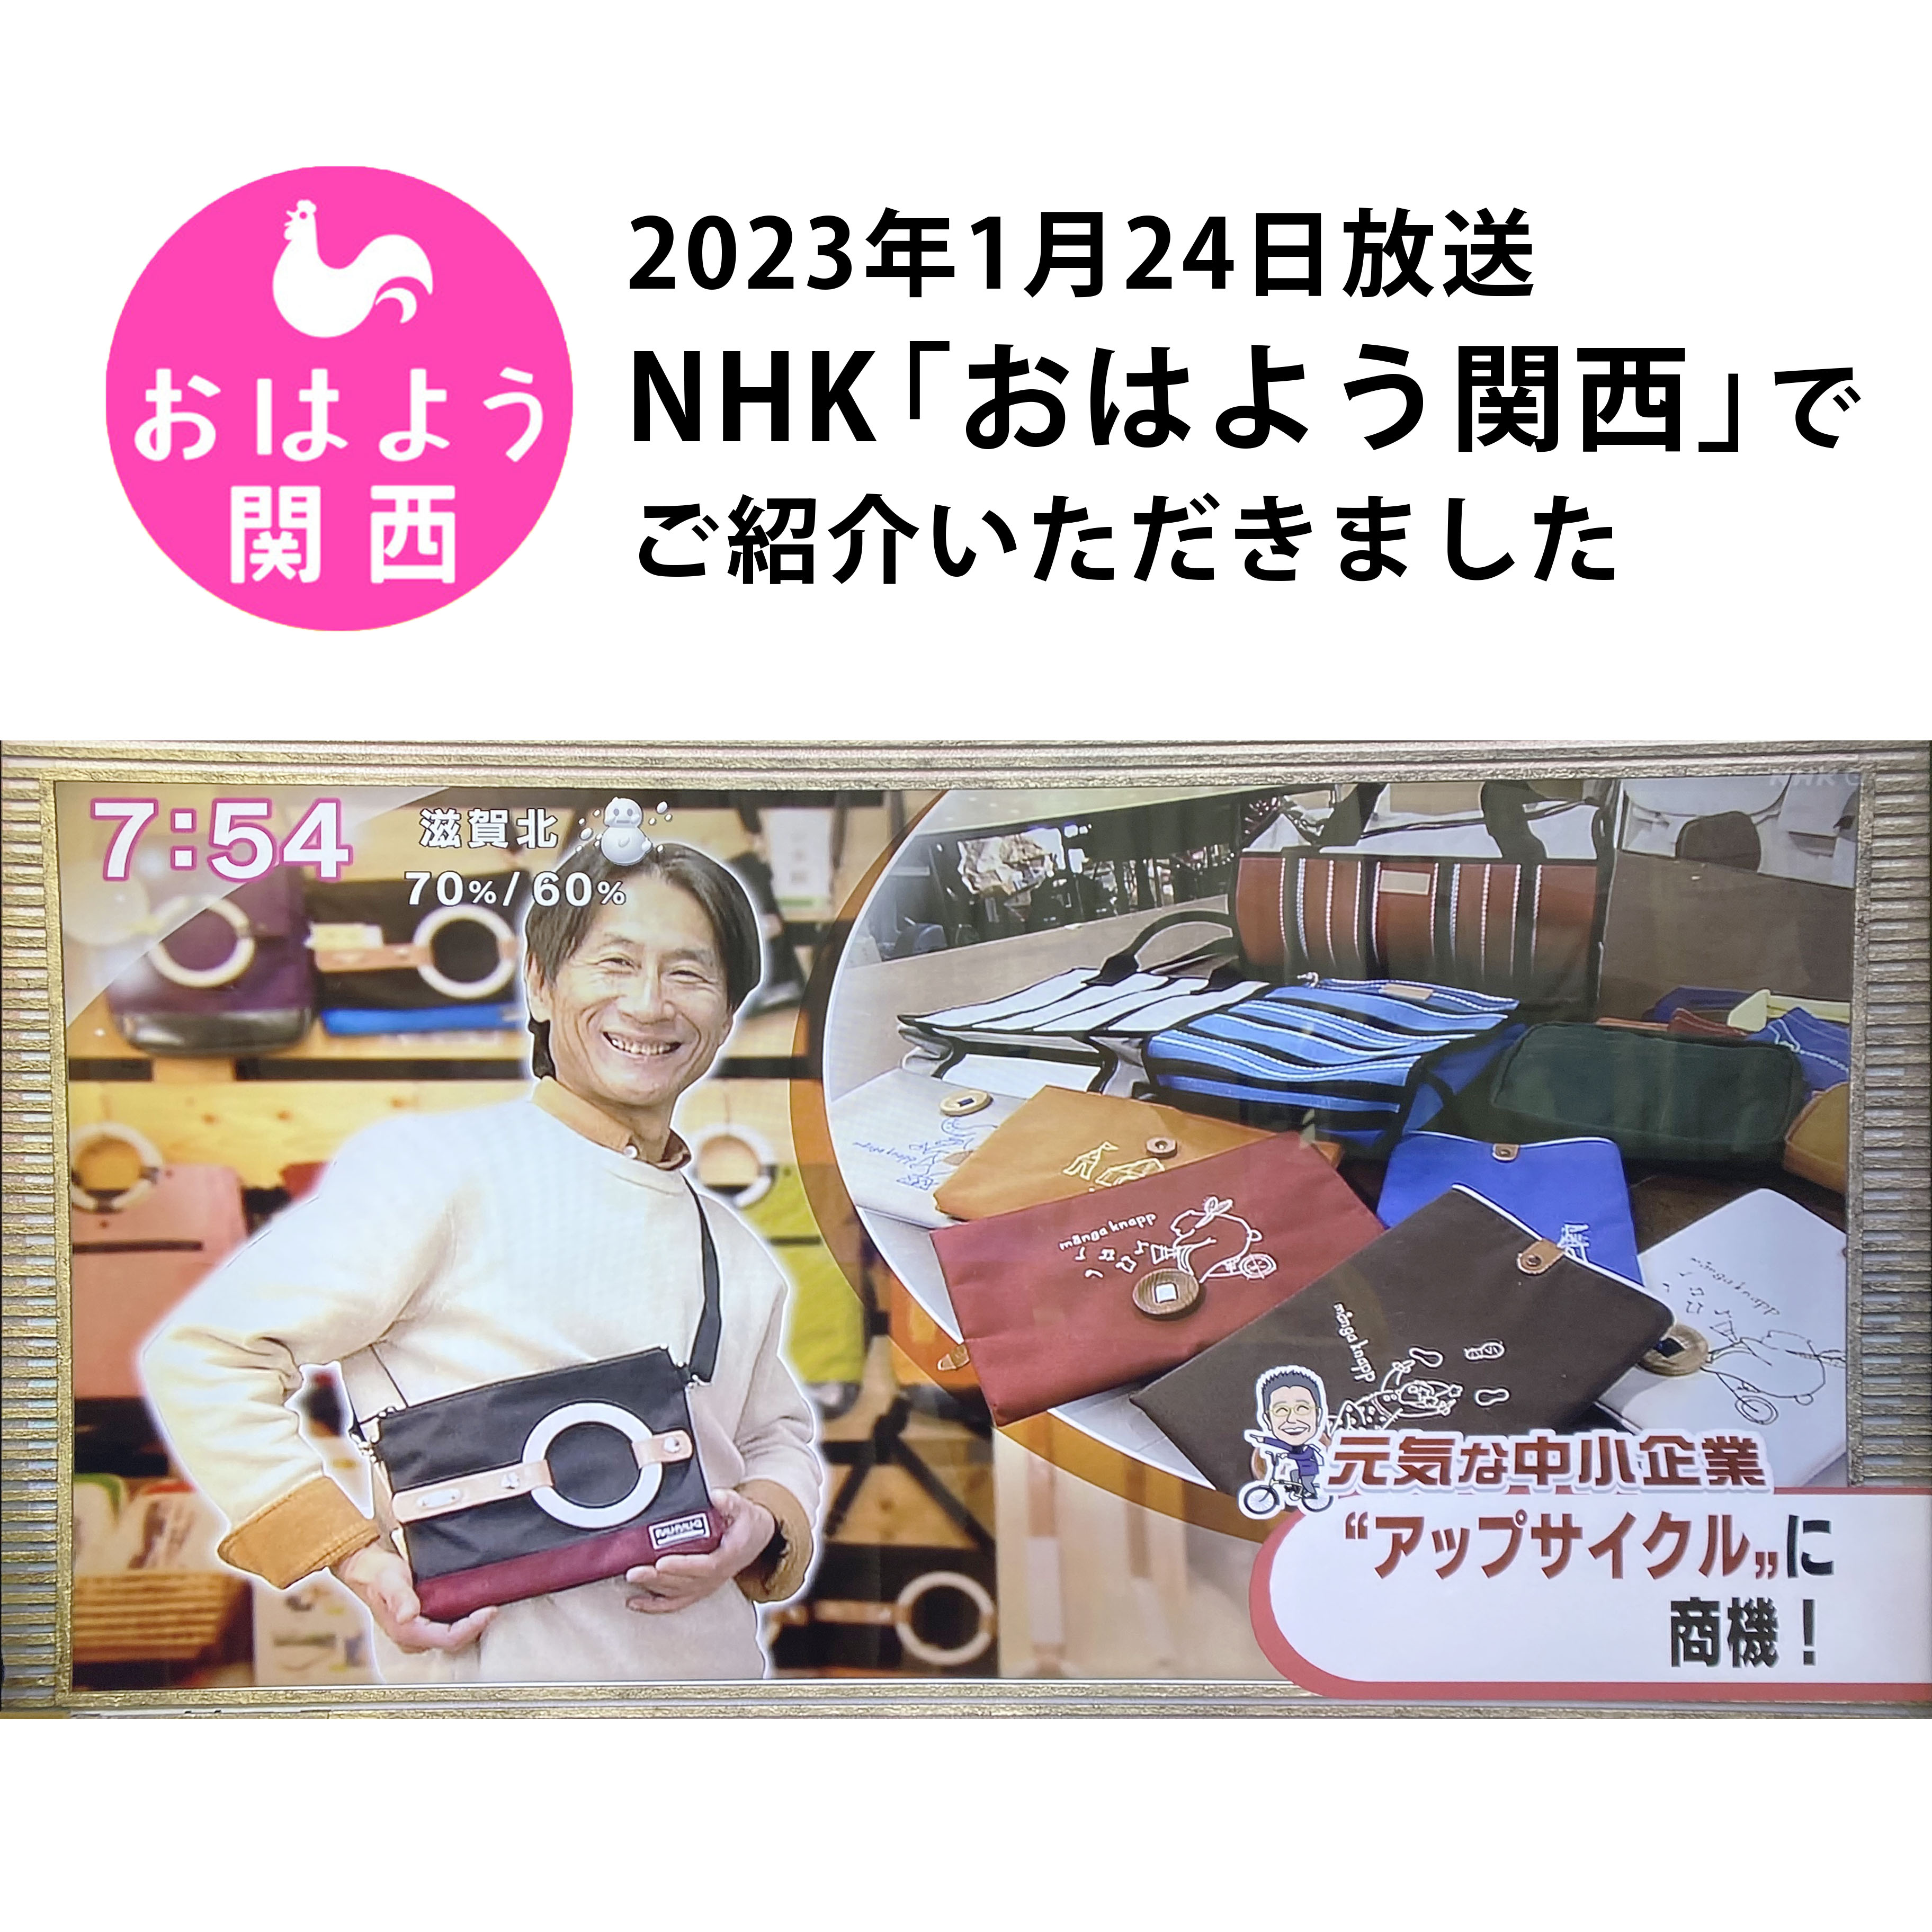 NHK「おはよう関西」